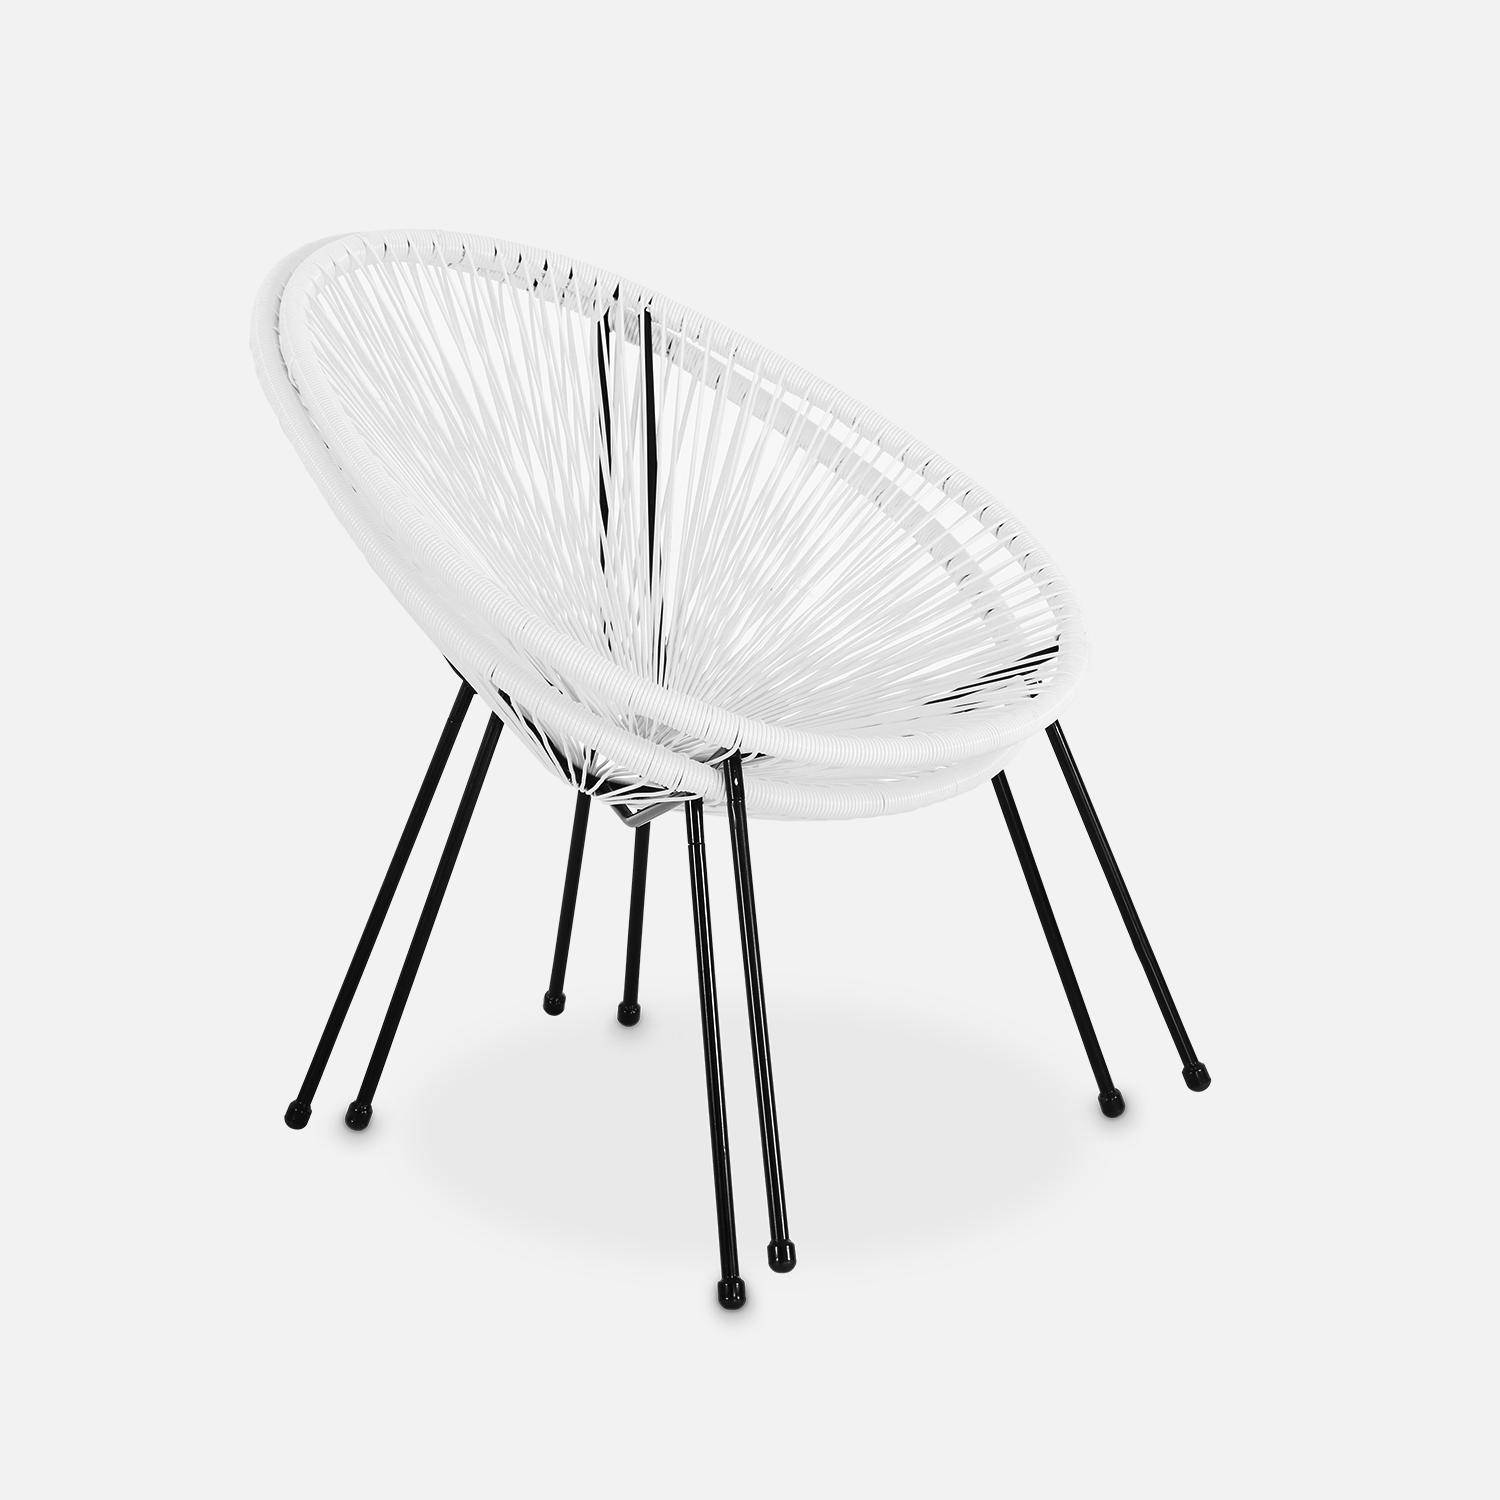 Lot de 2 fauteuils design Oeuf - Acapulco blanc- Fauteuils 4 pieds design rétro, cordage plastique, intérieur / extérieur Photo6